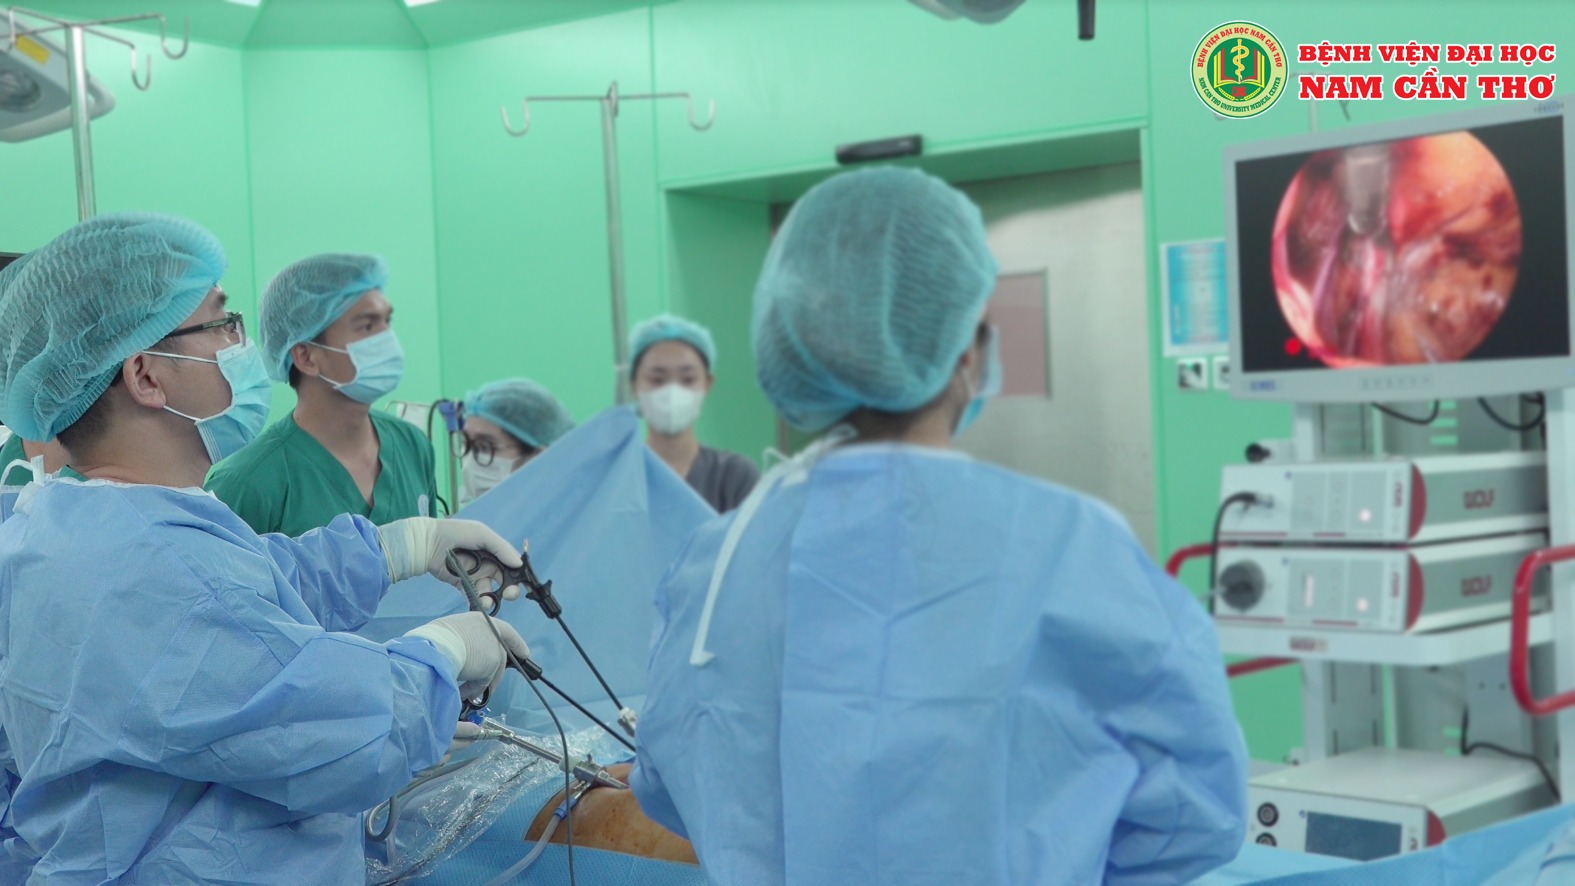 Bệnh viện Đại học Nam Cần Thơ phối hợp cùng chuyên gia Bệnh viện Trung ương Huế phẫu thuật nội soi thoát vị bẹn tái phát nặng cho bệnh nhân